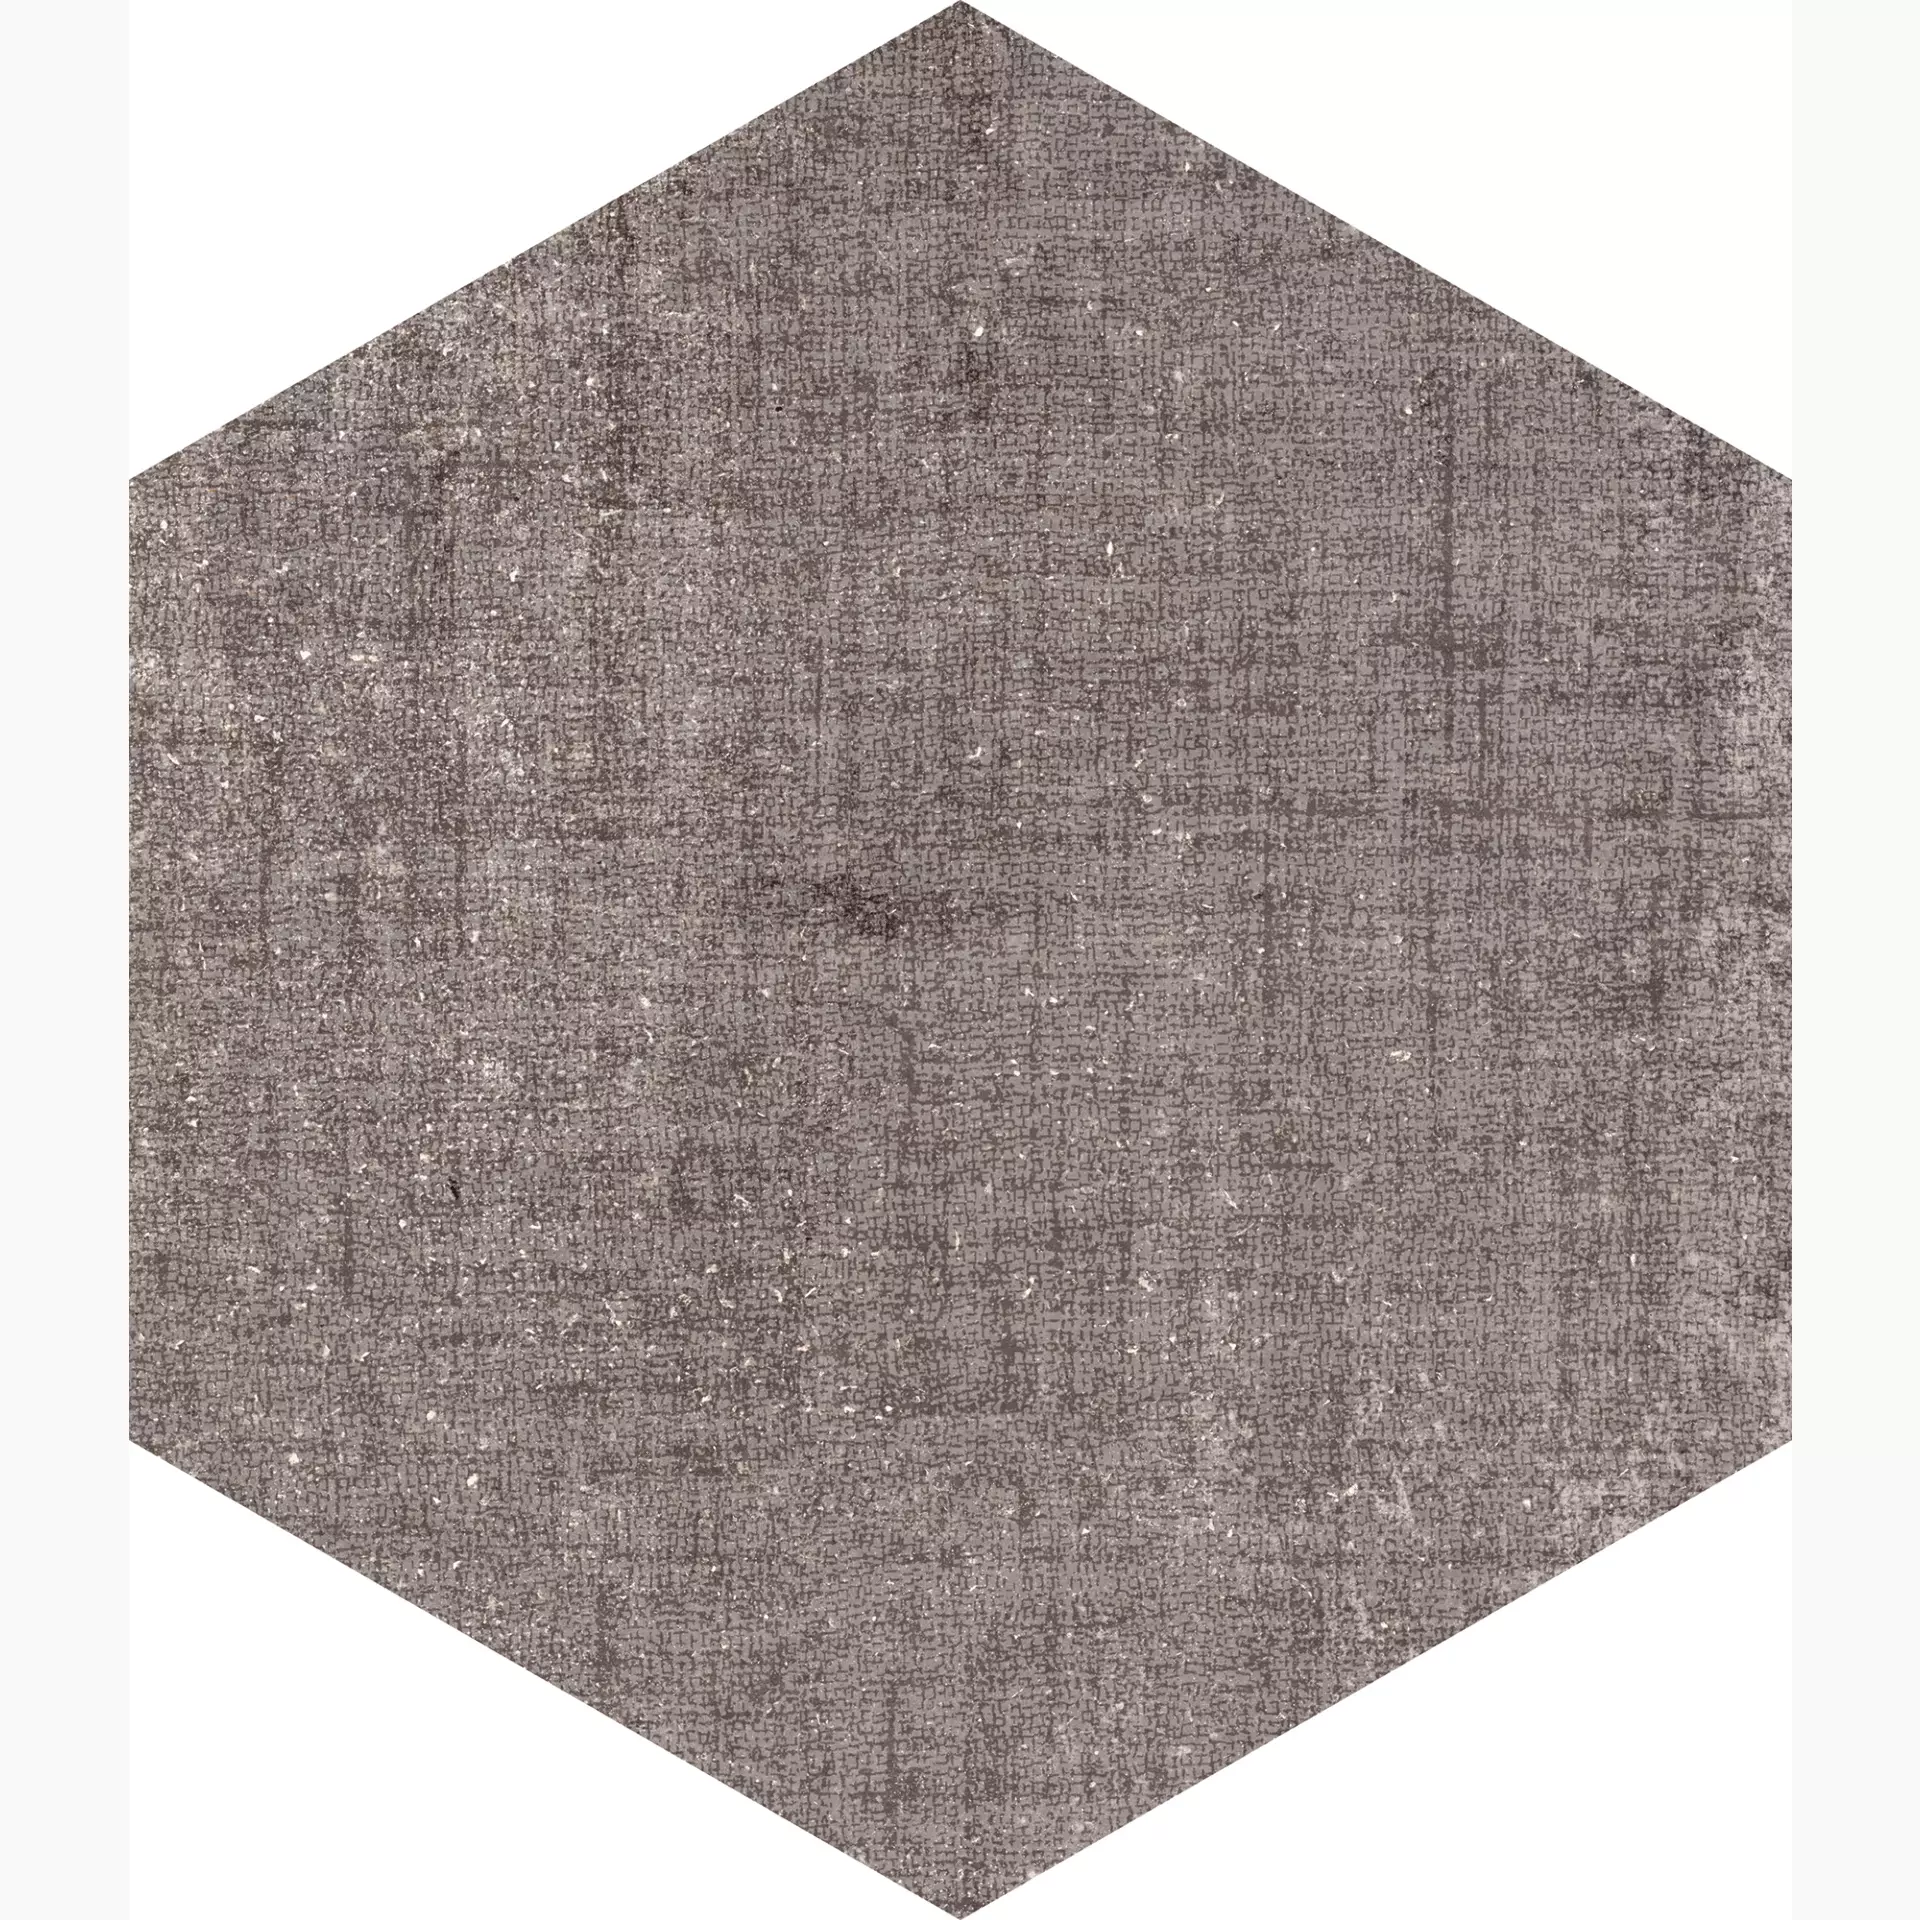 Marcacorona Textile Taupe Naturale – Matt Esagona D625 21,6x25cm 9mm